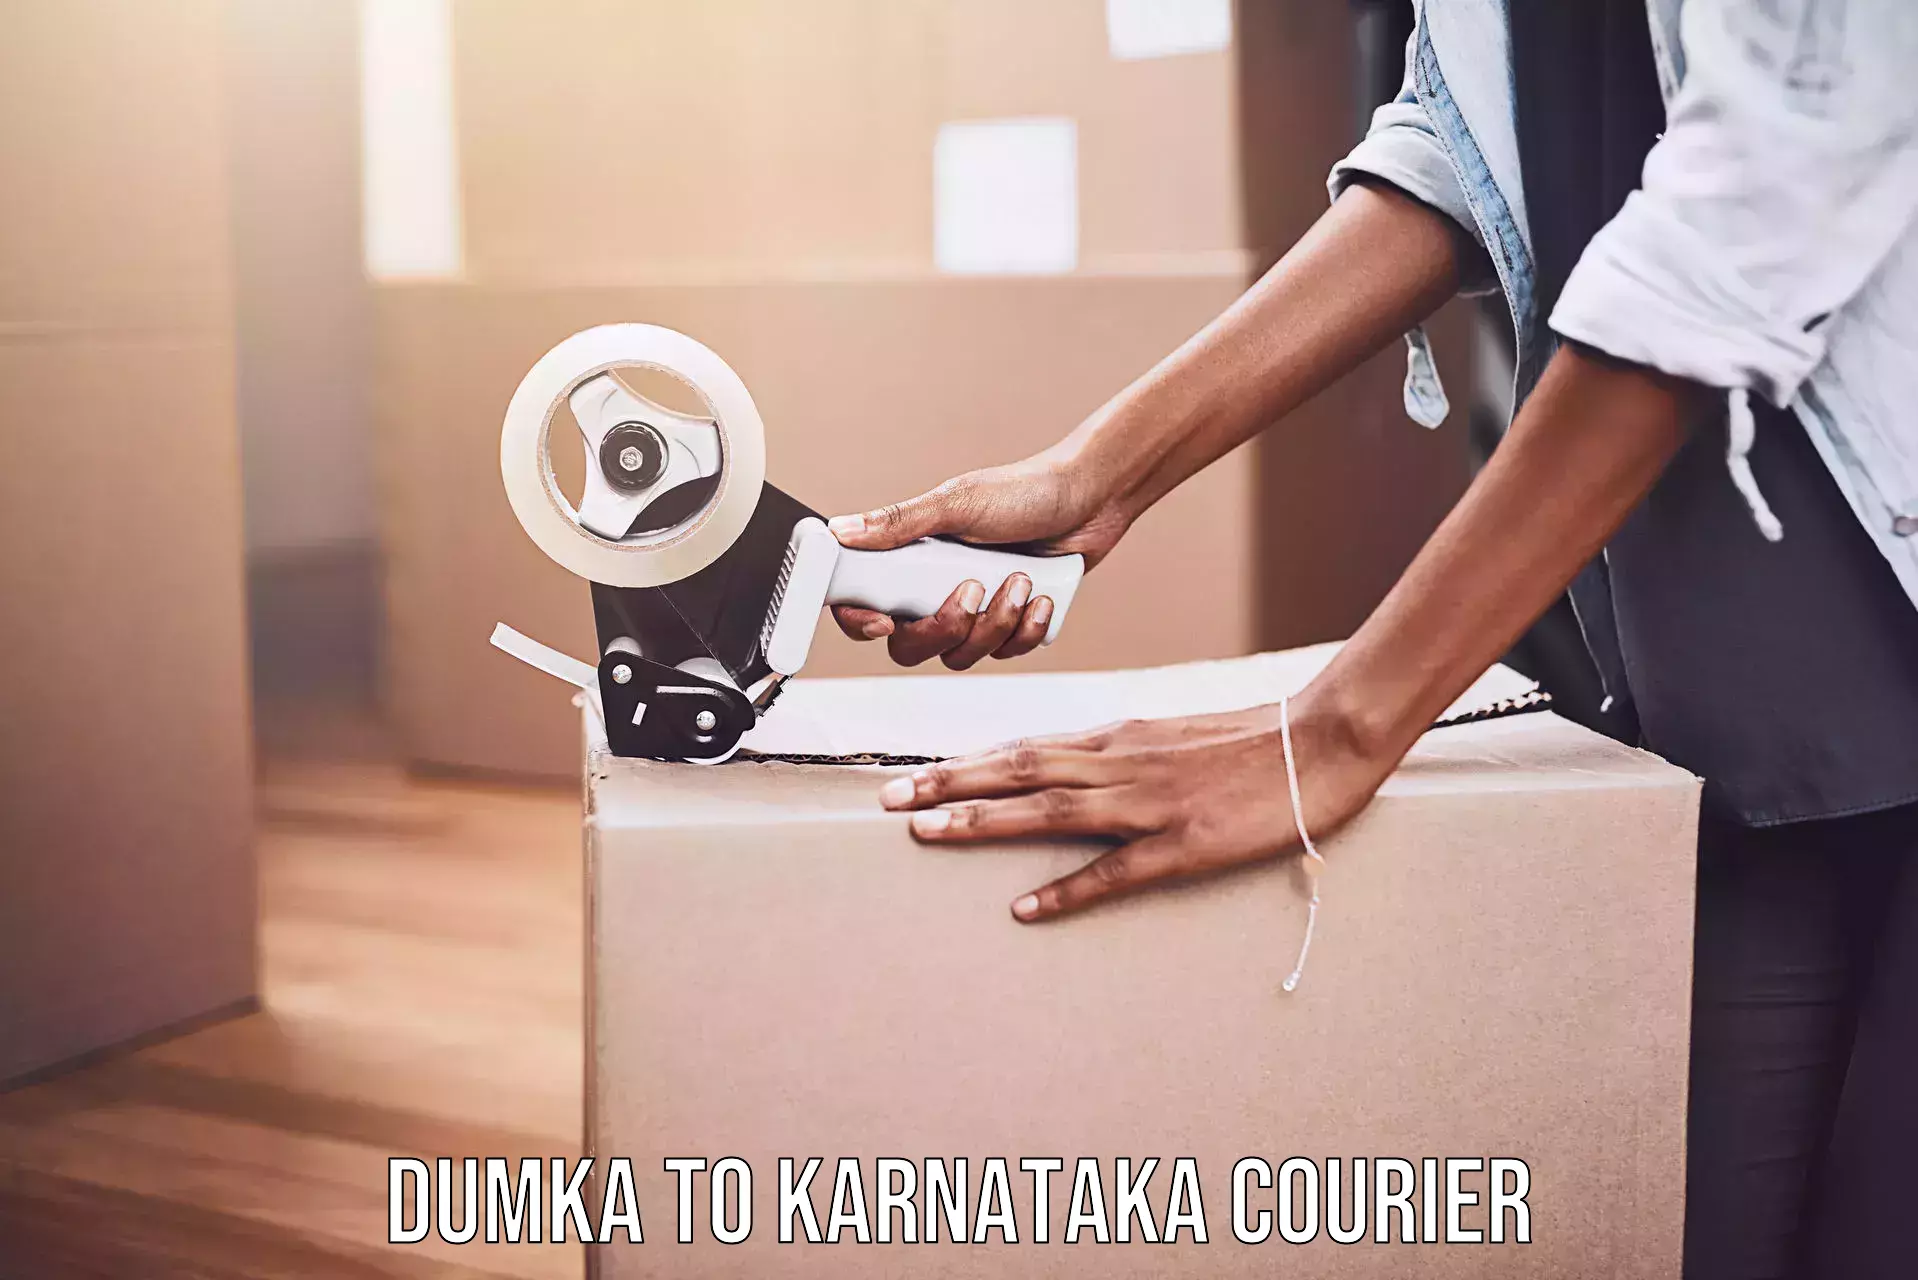 On-demand delivery Dumka to Karnataka